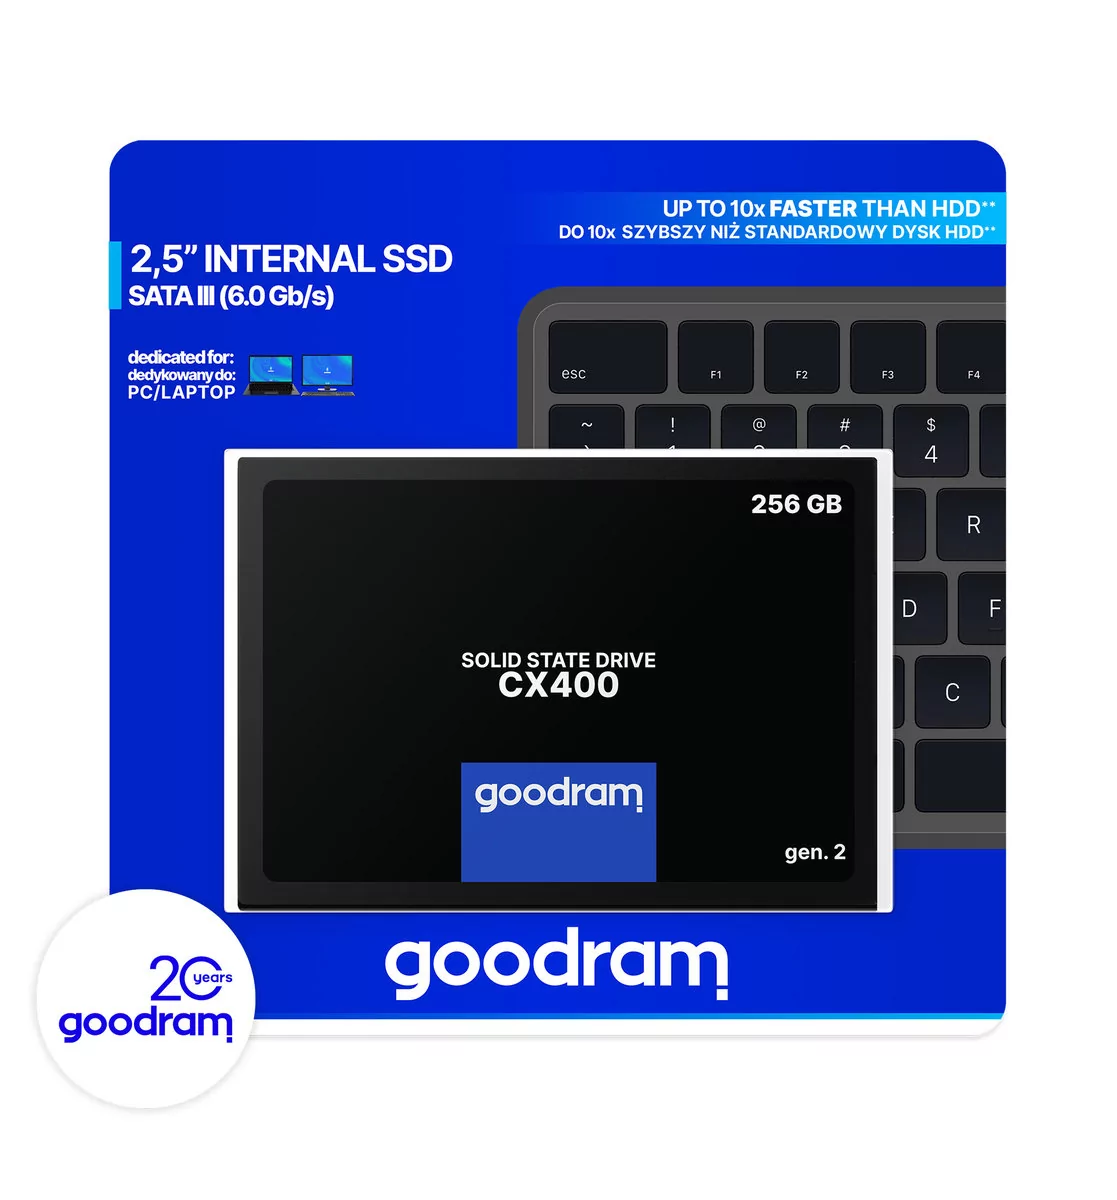 Goodram dysk SSD 256GB CX400 G.2 2